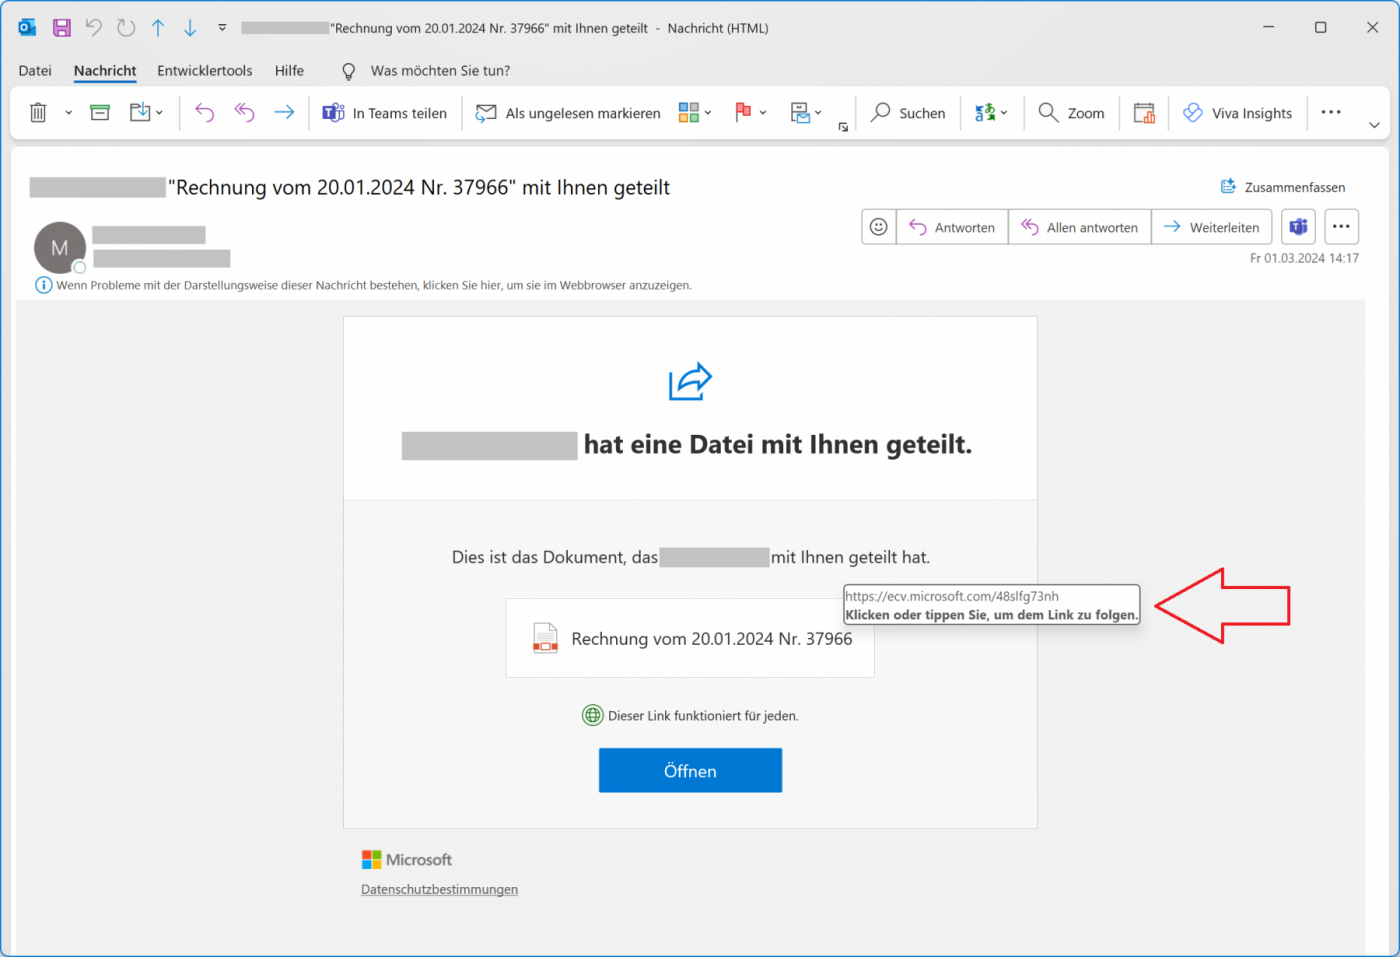 Mainzer Datenfabrik - Neue Welle von Phishing-Angriffen zielt auf Microsoft Office 365 Accounts